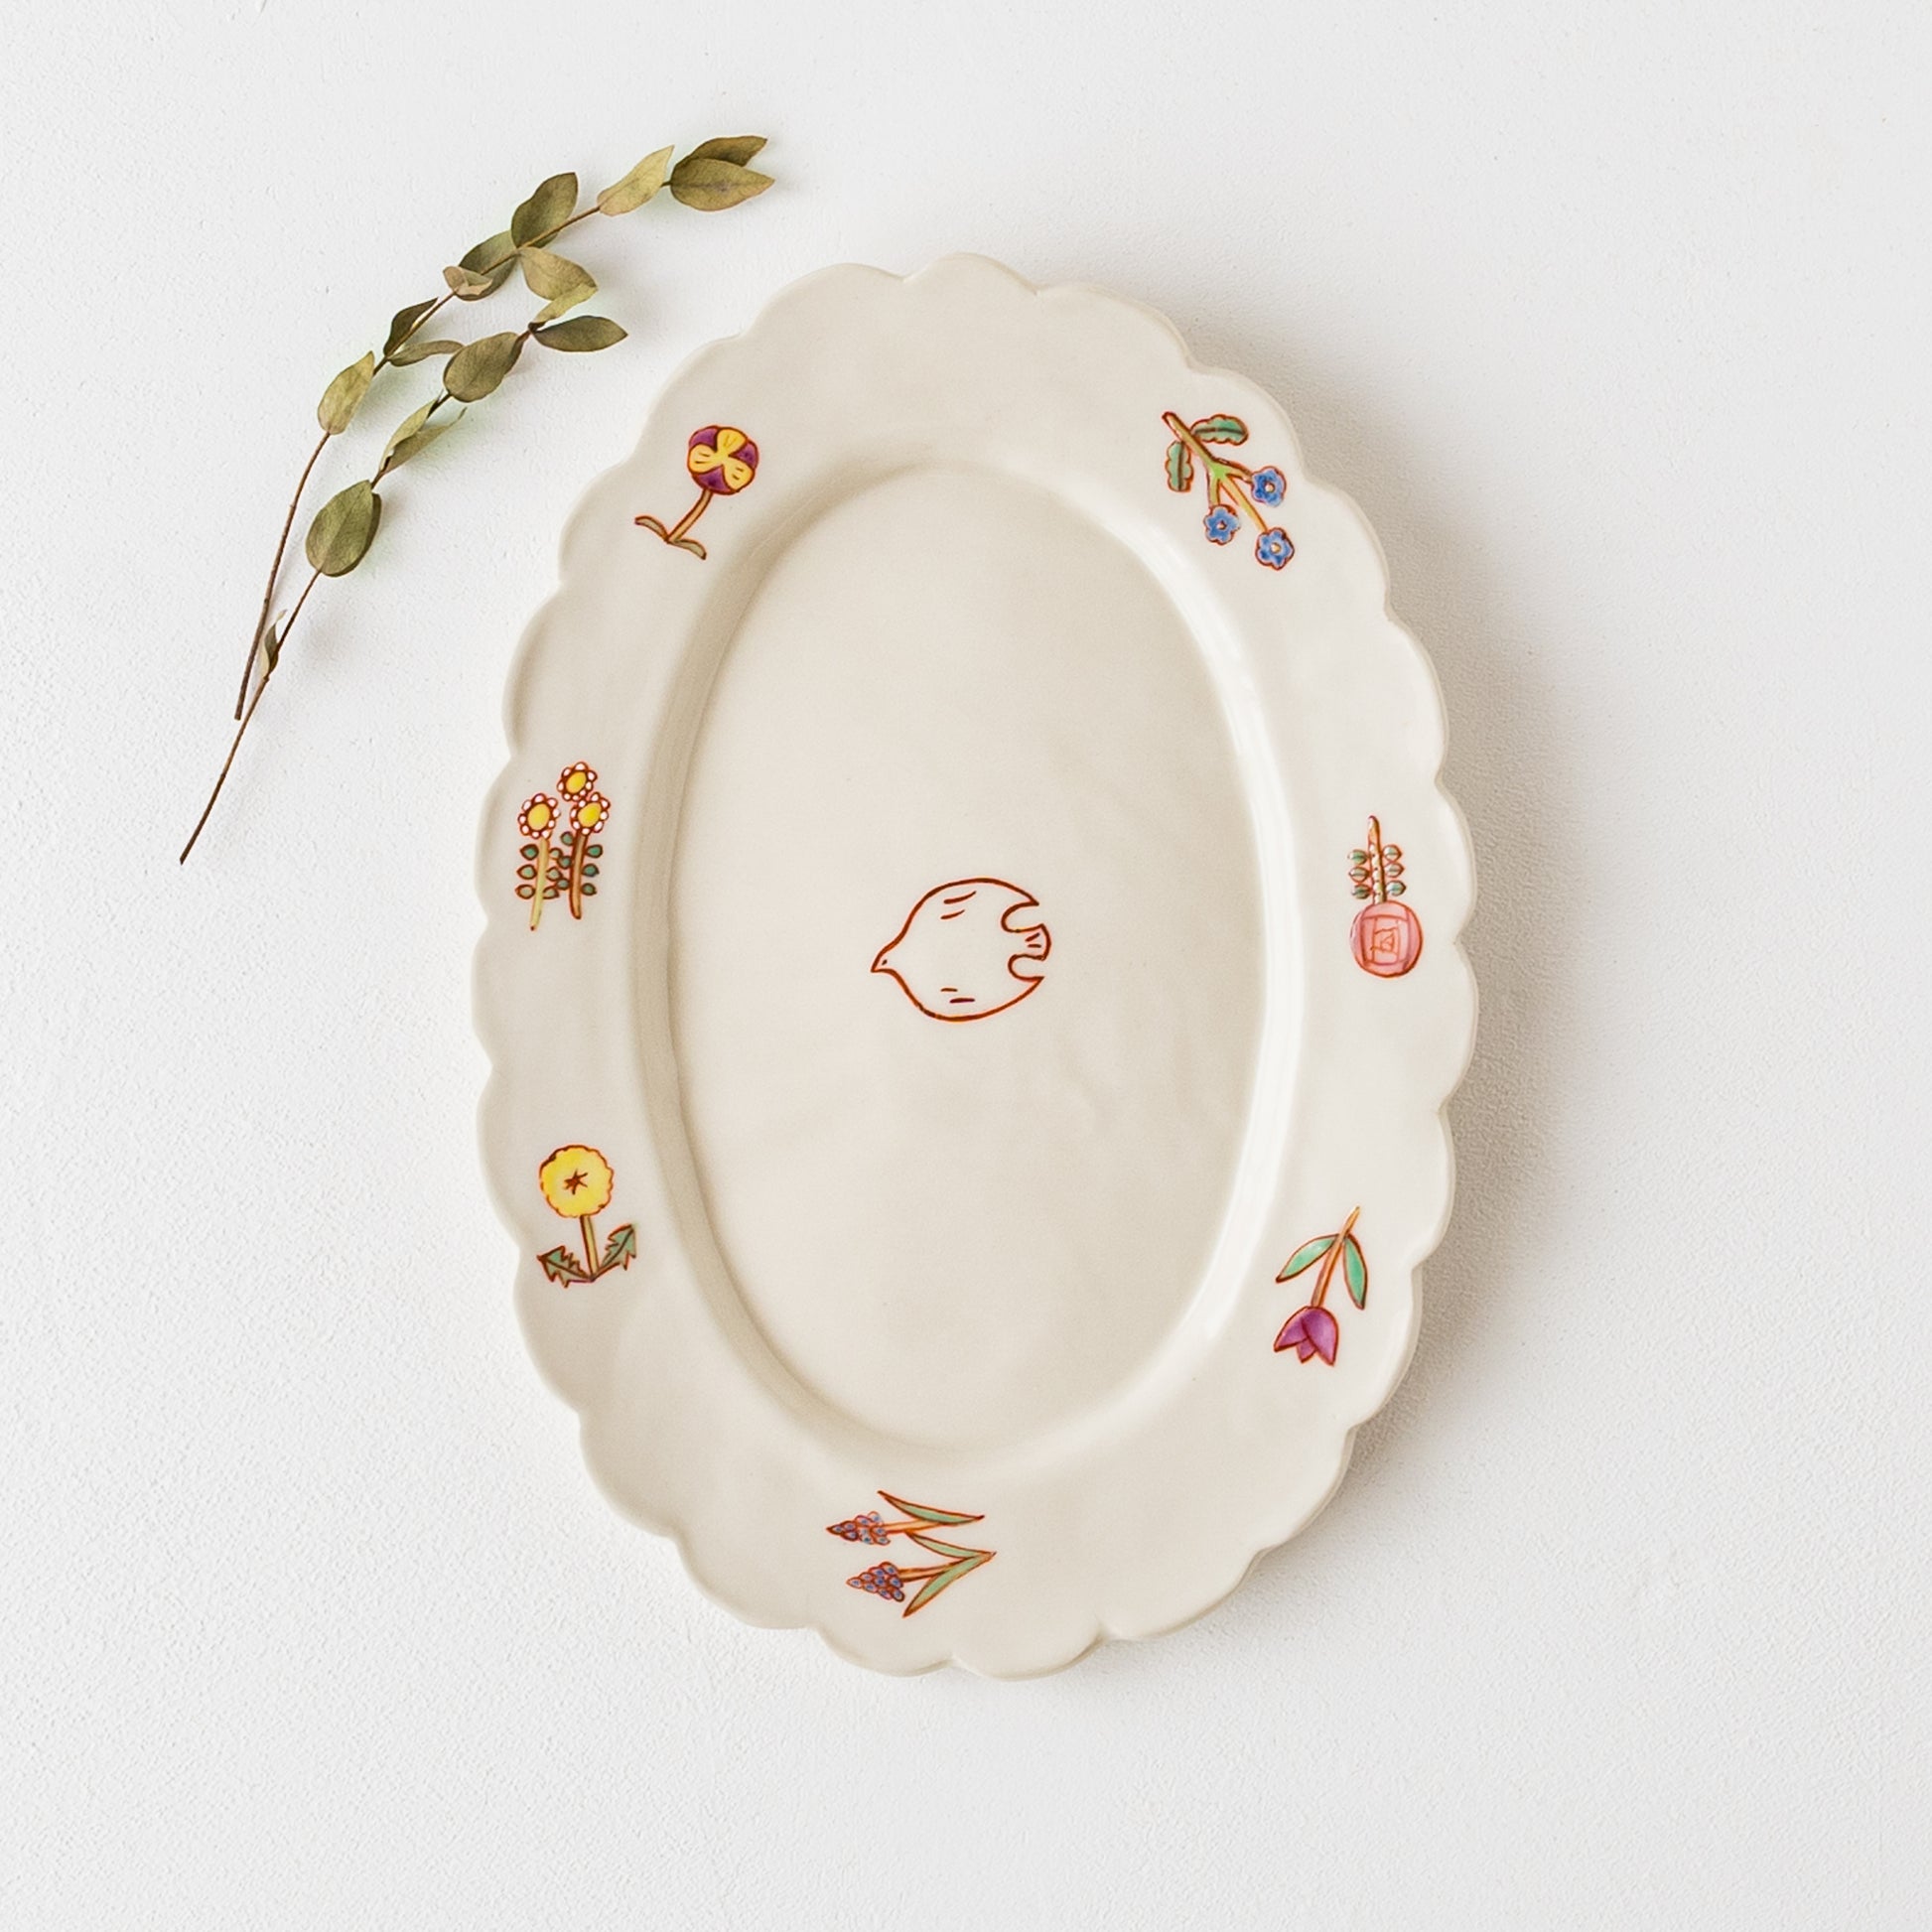 絵本の1ページのようで可愛らしい長浜由起子さんの小花絵付オーバル皿